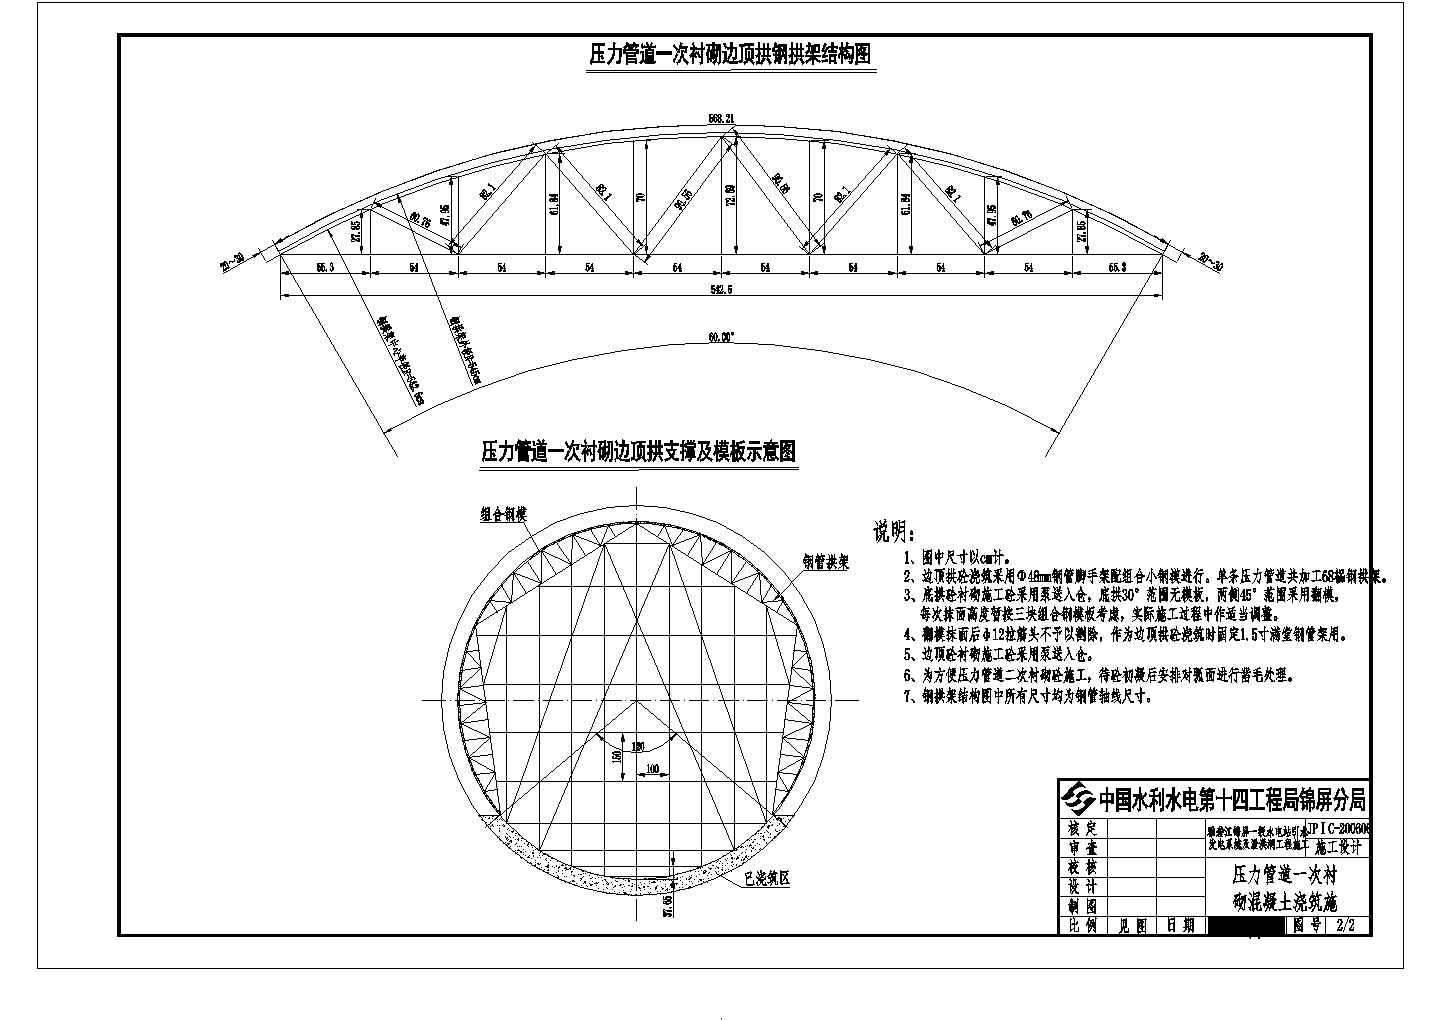 技施施工阶段雅砻江锦屏一级水电站引水压力管道一次衬砌砼施工图